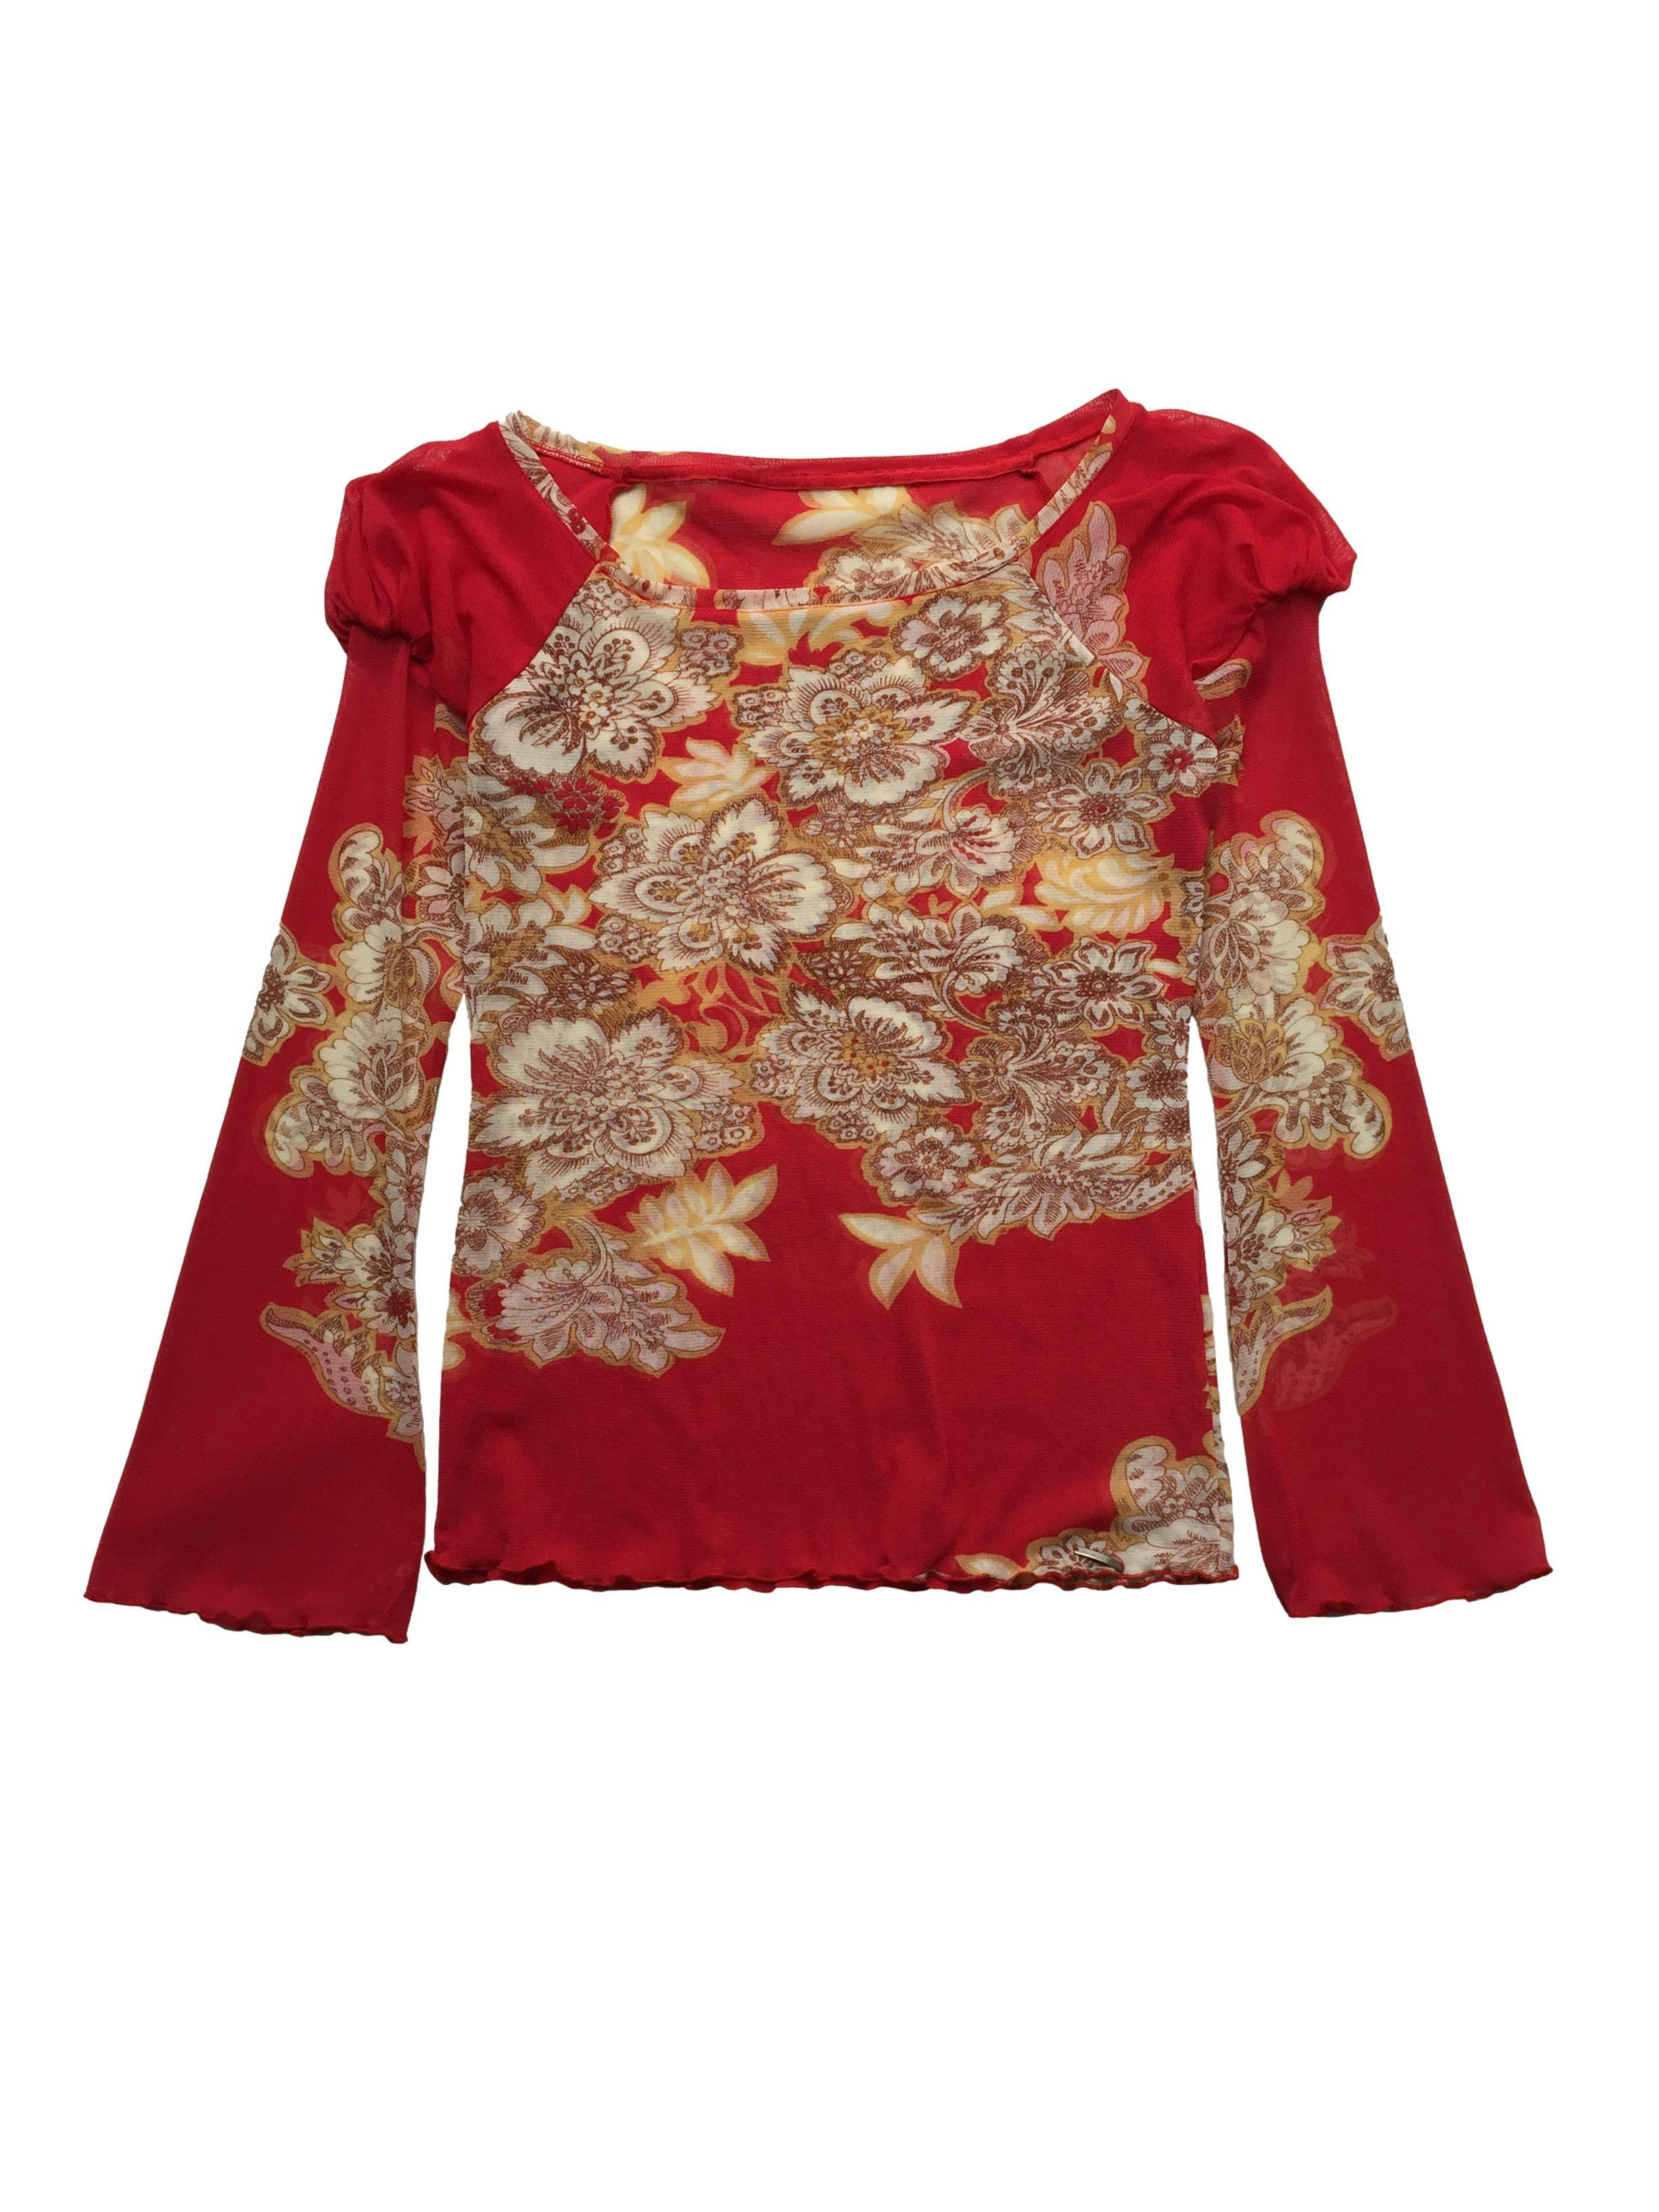 Blusa Michelle Belau de mesh rojo con estampado floral, cuello bote, fruncido en hombros y acabado lechuga. Busto 90cm, Largo 60cm.